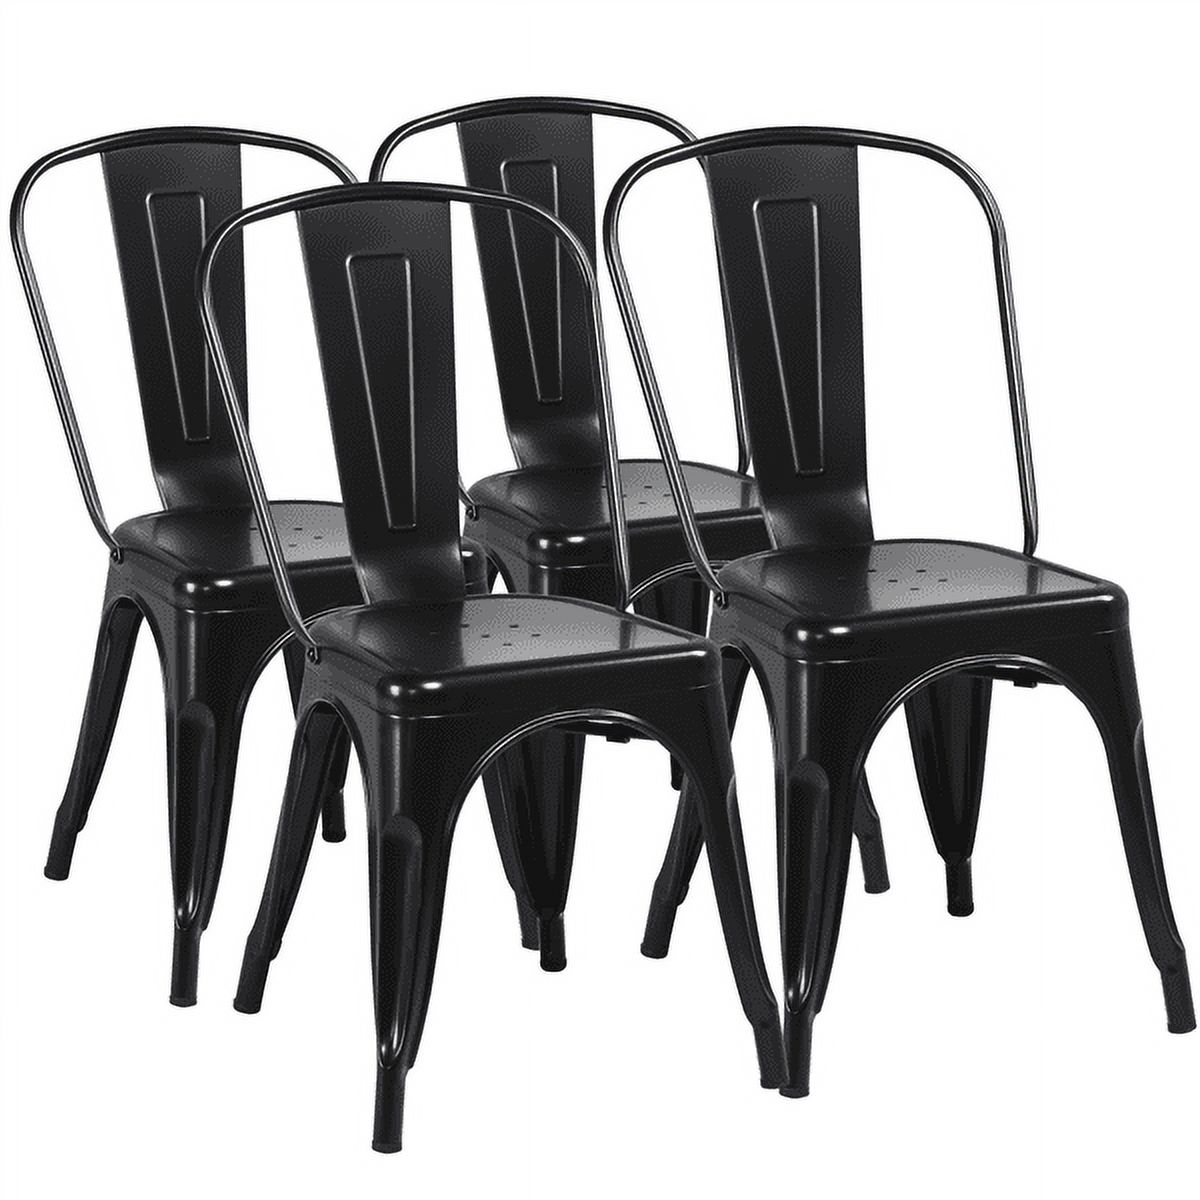 Alden Design Dining Chair, Set of 4, Black - image 1 of 7